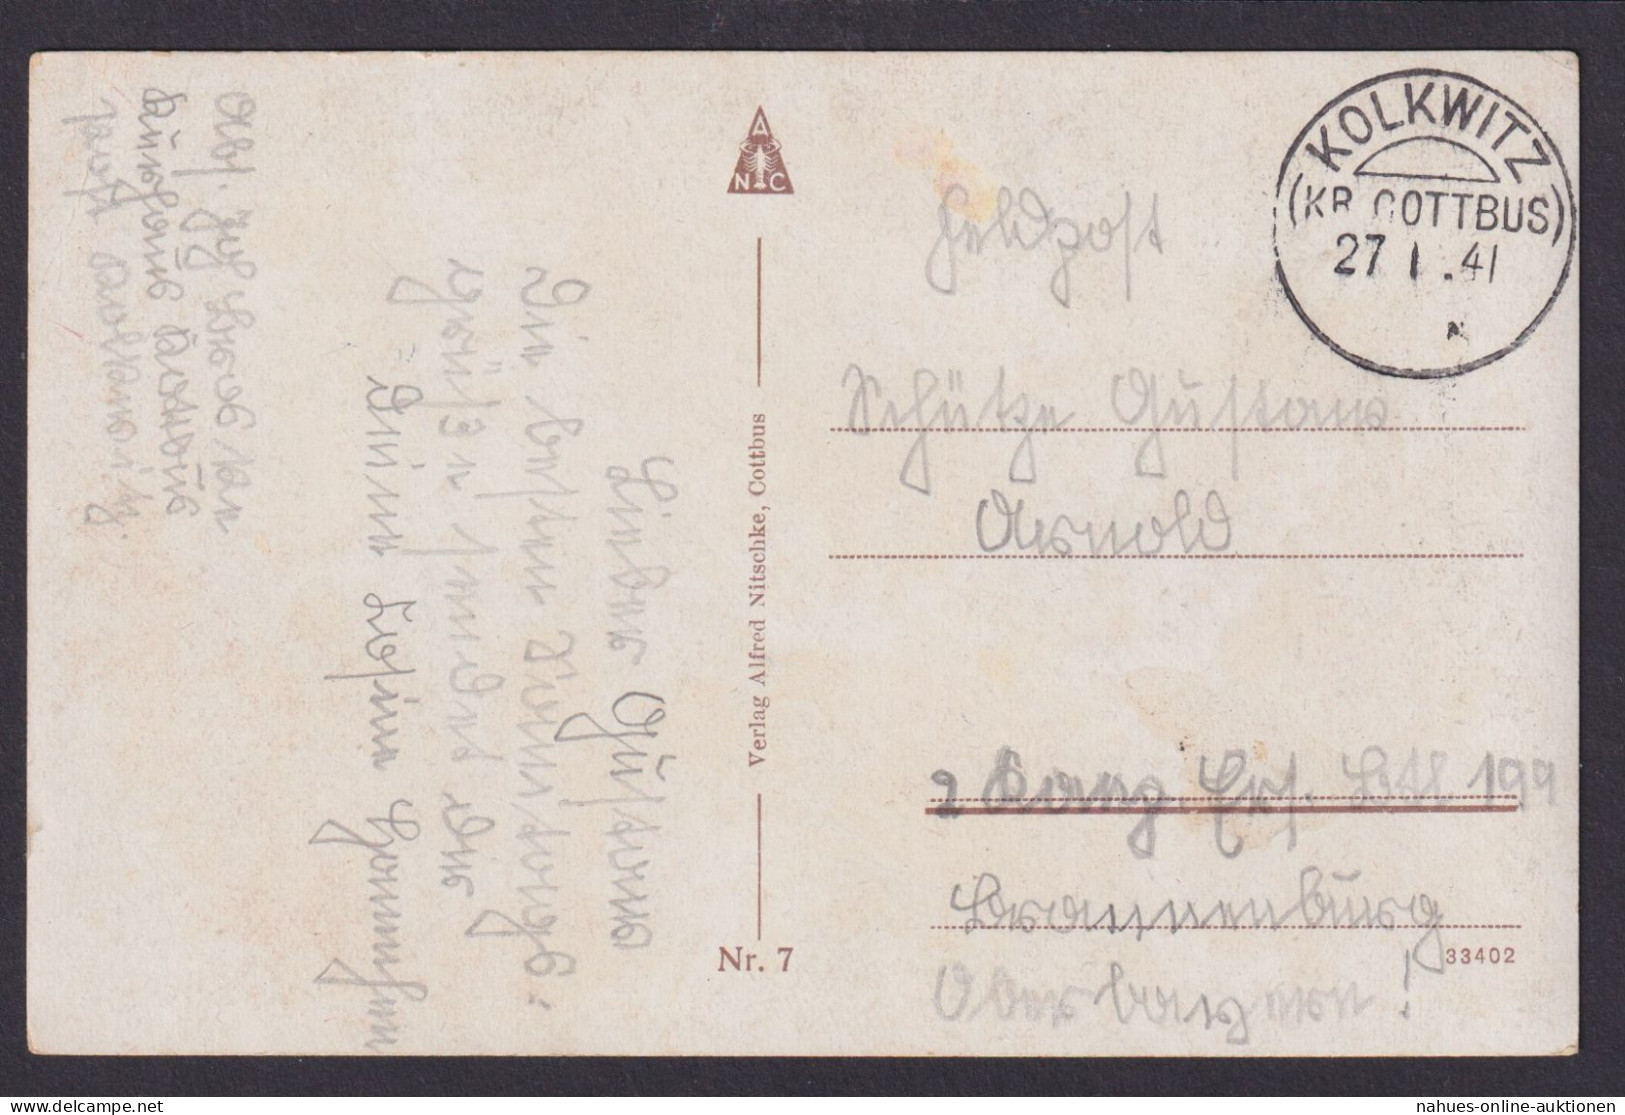 Kolkwitz Kr. Cottbus Brandenburg Deutsches Reich Feldpost Ansichtskarte - Covers & Documents